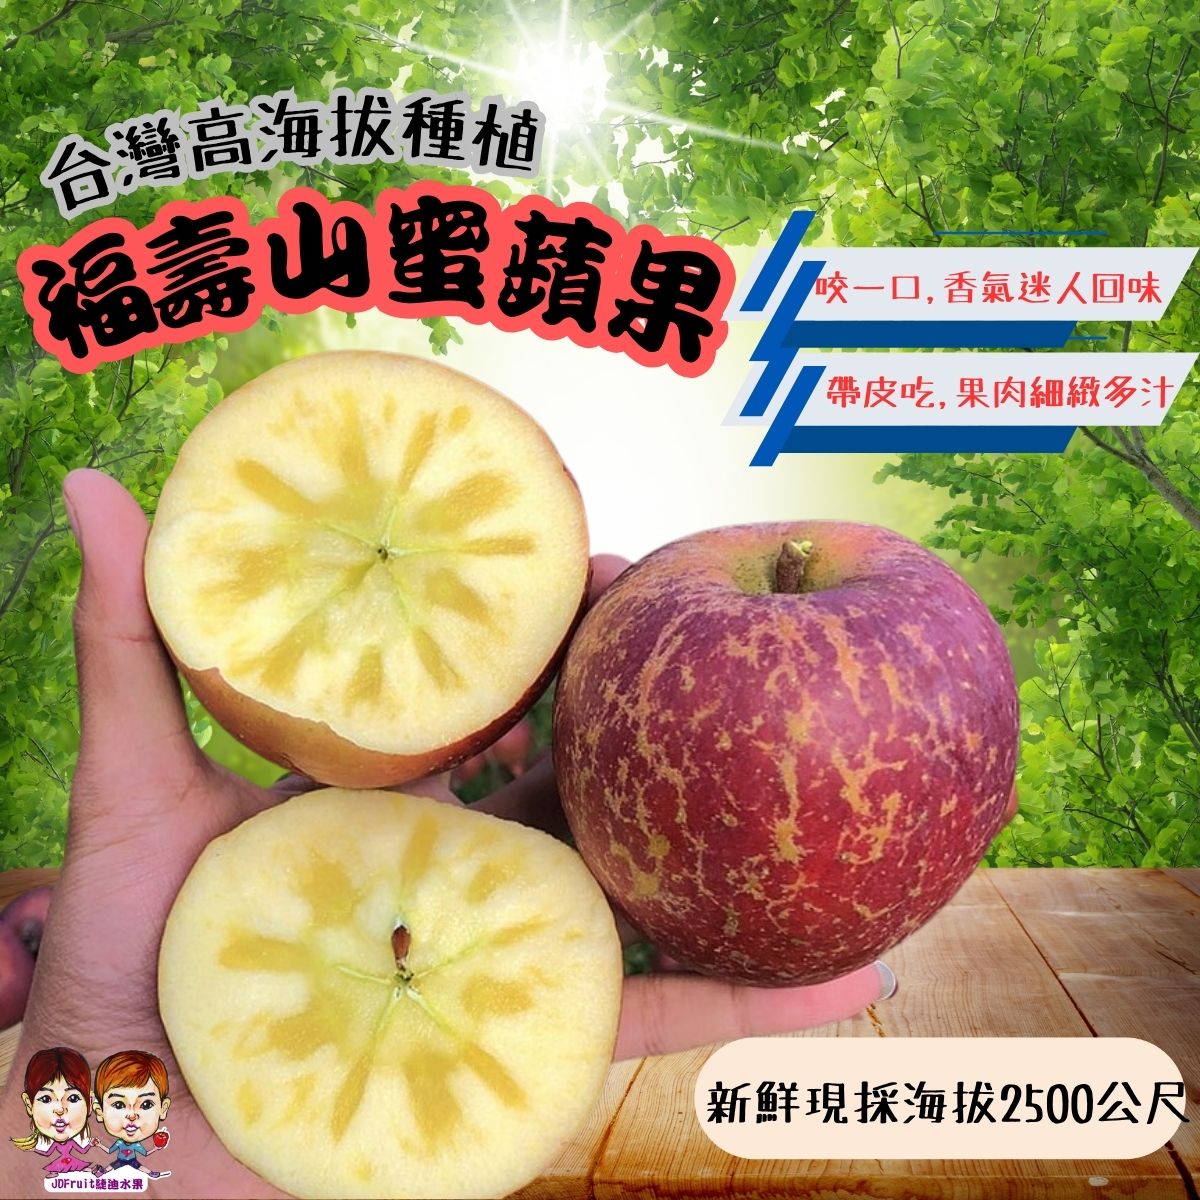 【緁迪水果JDFruit】台灣福壽山蜜蘋果(小果)4斤裝